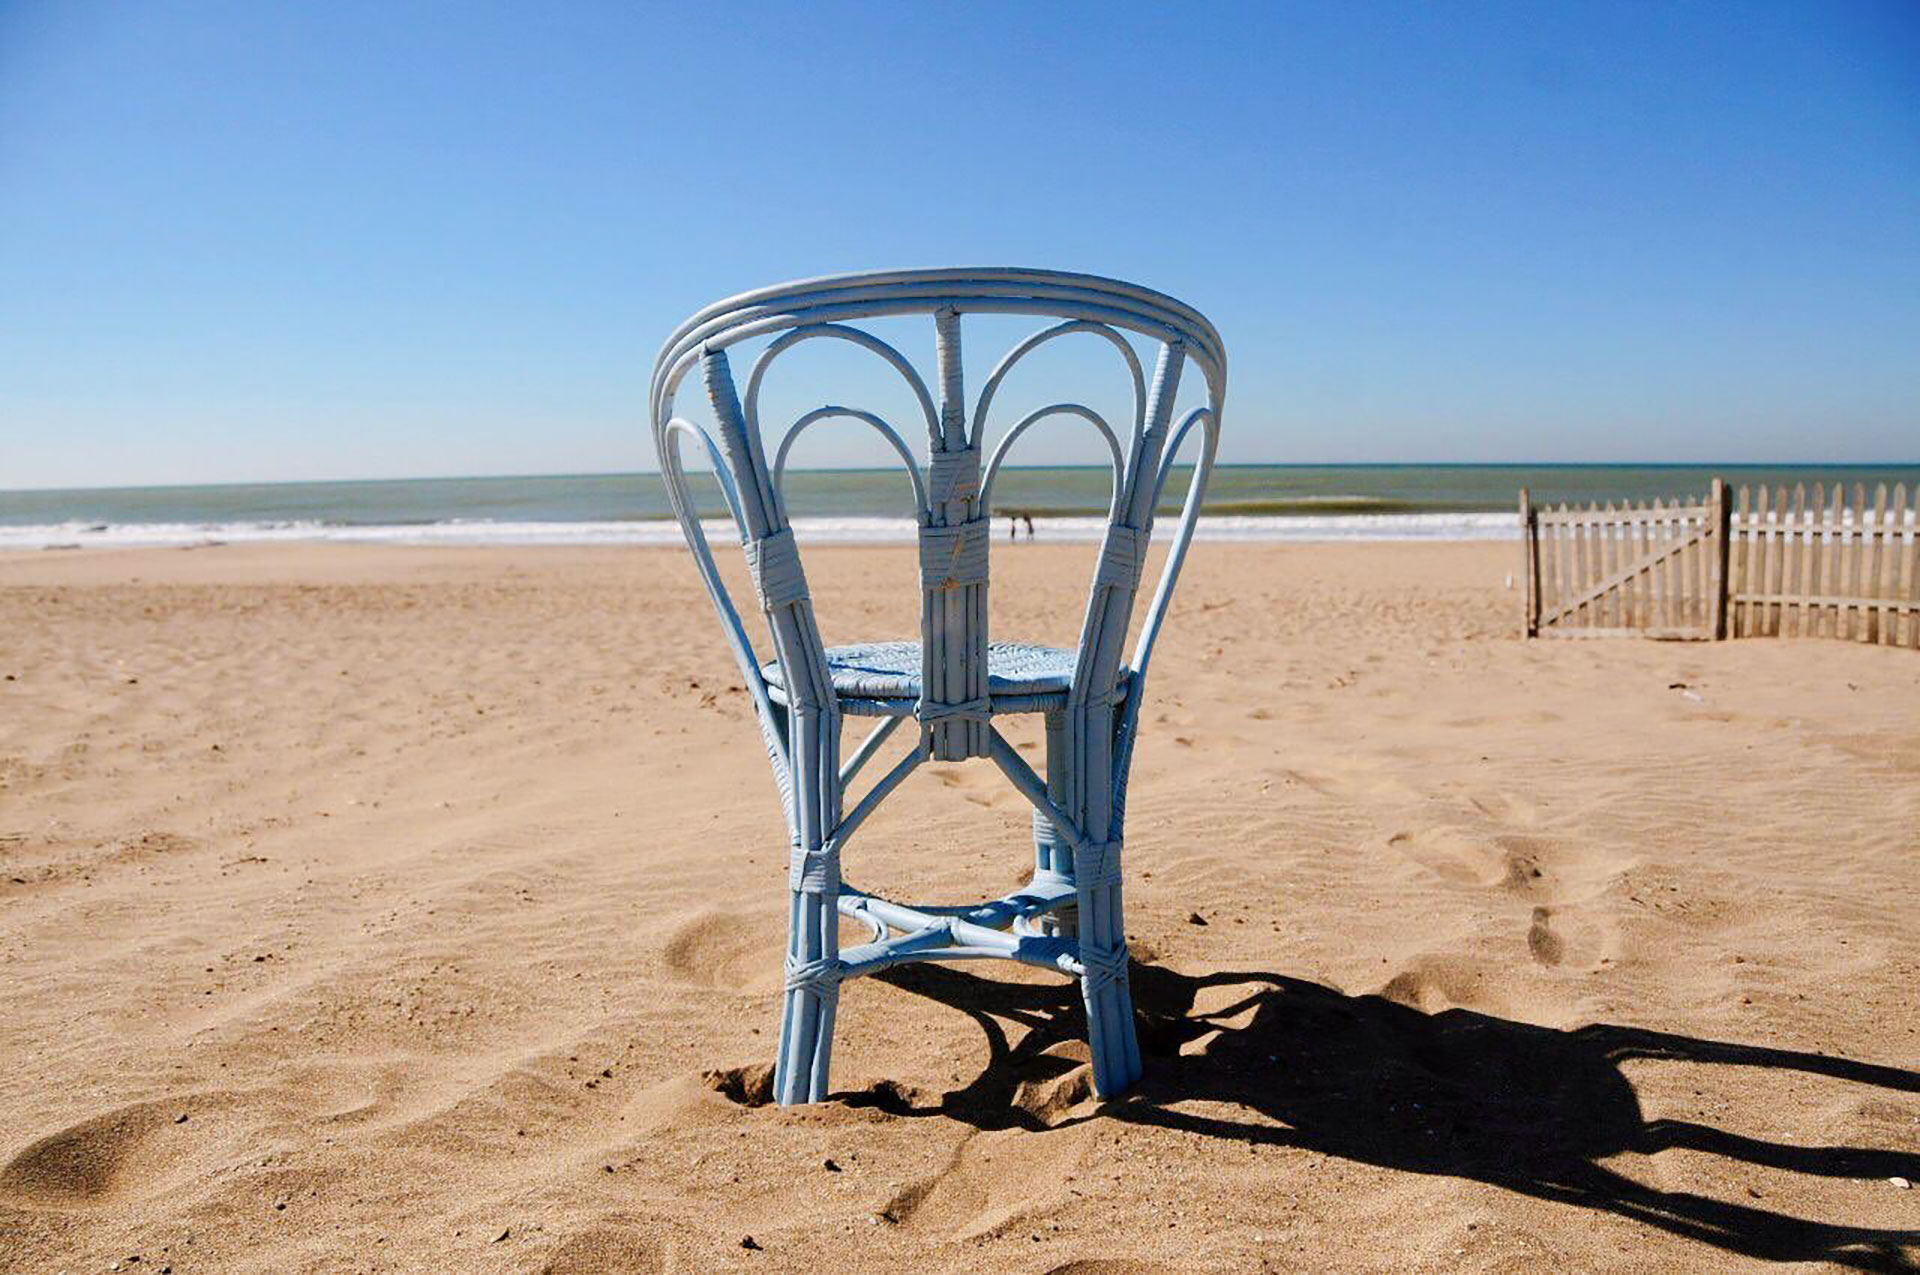 La silla fue declarada Patrimonio Histórico, Social, Artístico y Cultural en 2009, el mismo año en que formó parte de los afiches de promoción del Festival de Cine de Mar del Plata